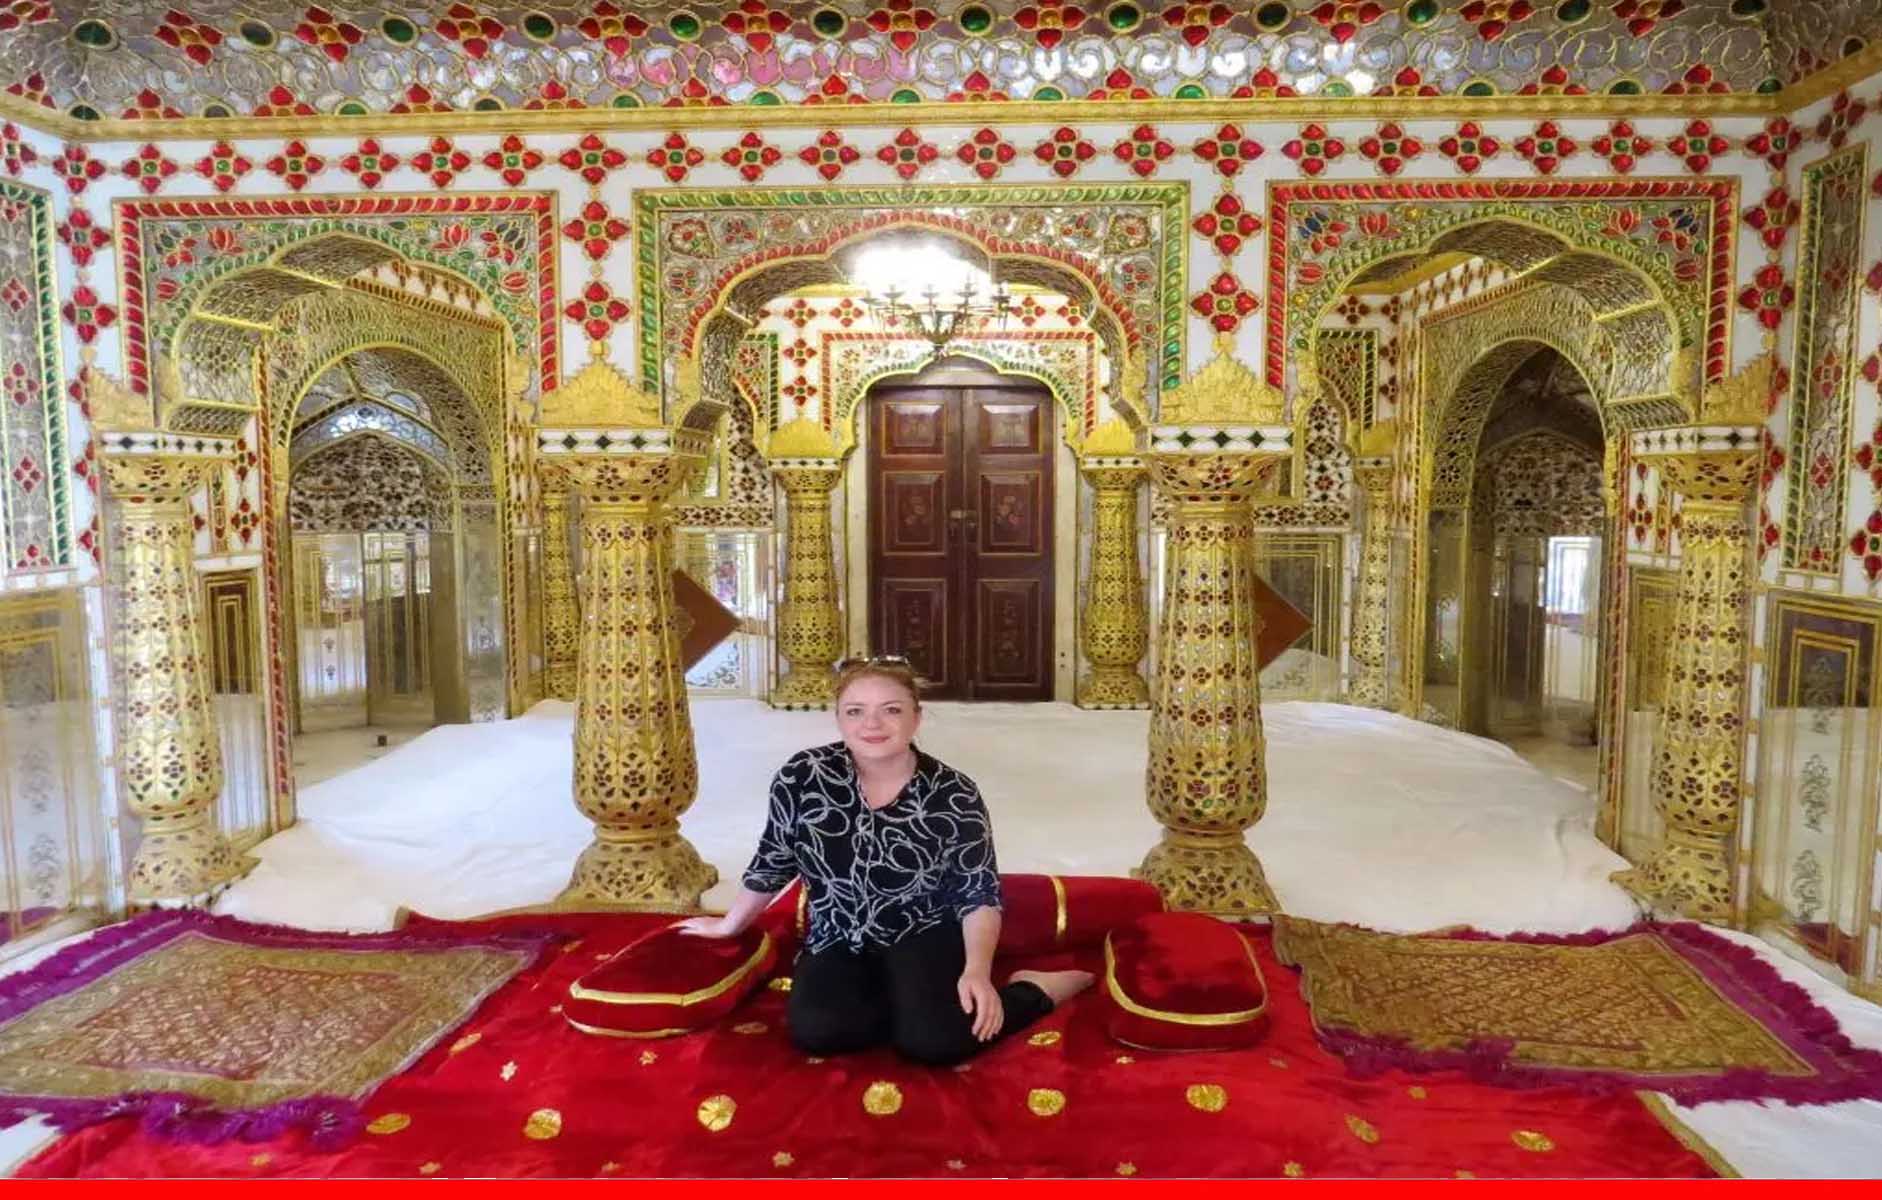 जयपुर के एक होटल में है ये खास कमरा, जिसका किराया 10 लाख रुपये